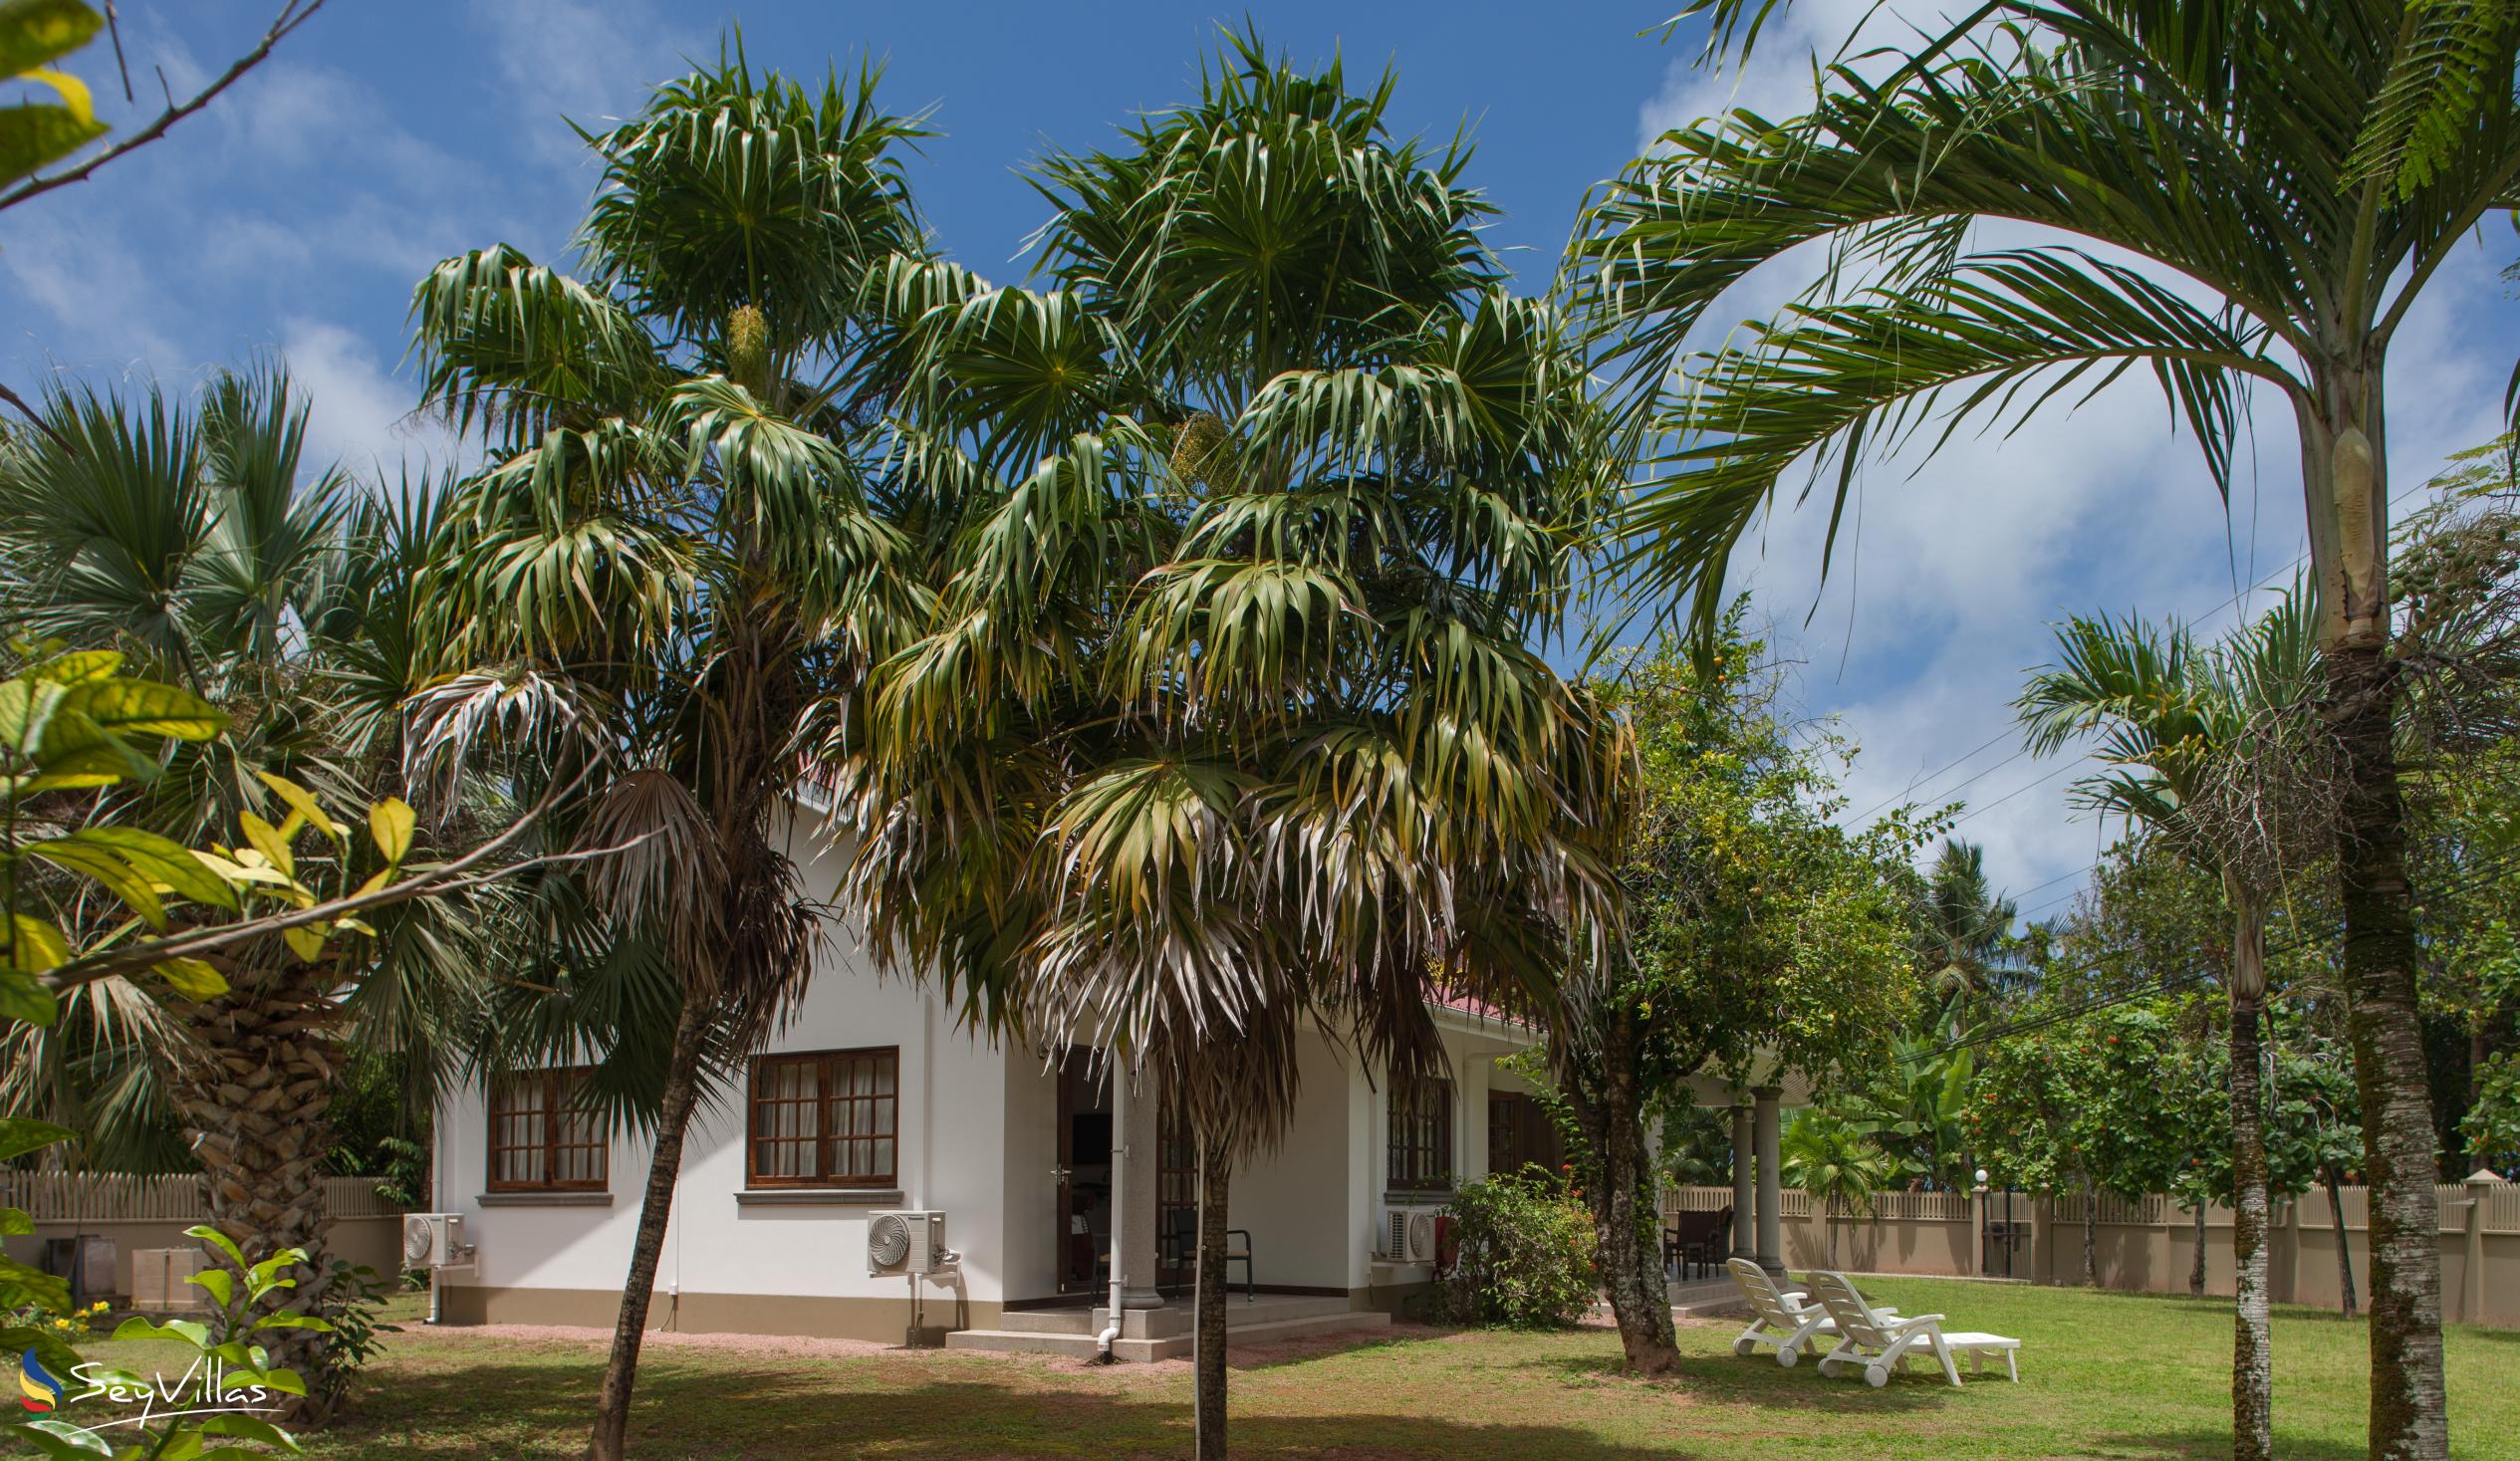 Foto 7: Villa Saint Sauveur - Aussenbereich - Praslin (Seychellen)